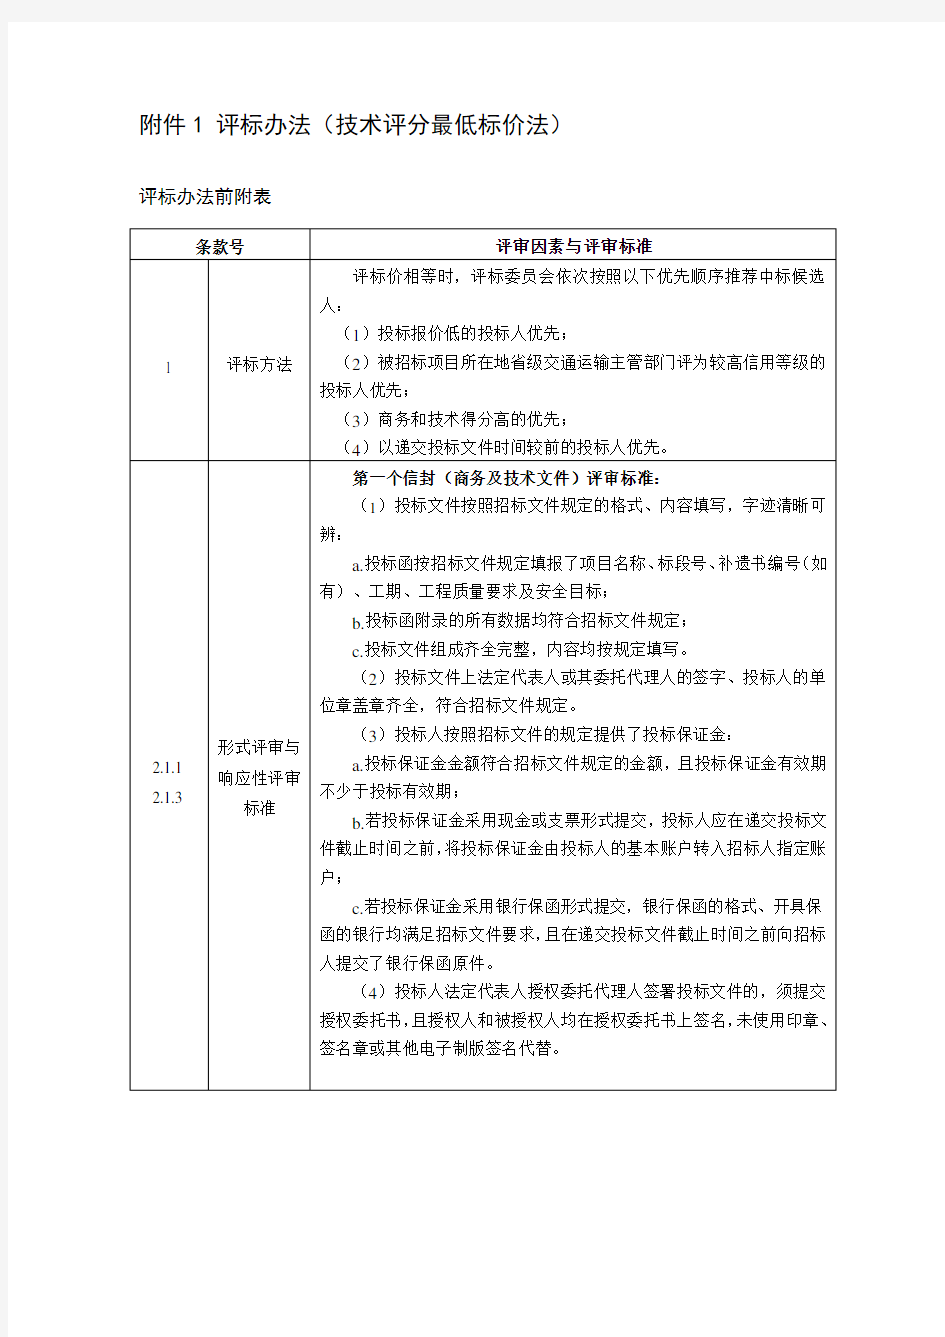 公路工程标准施工招标文件-中华人民共和国交通运输部